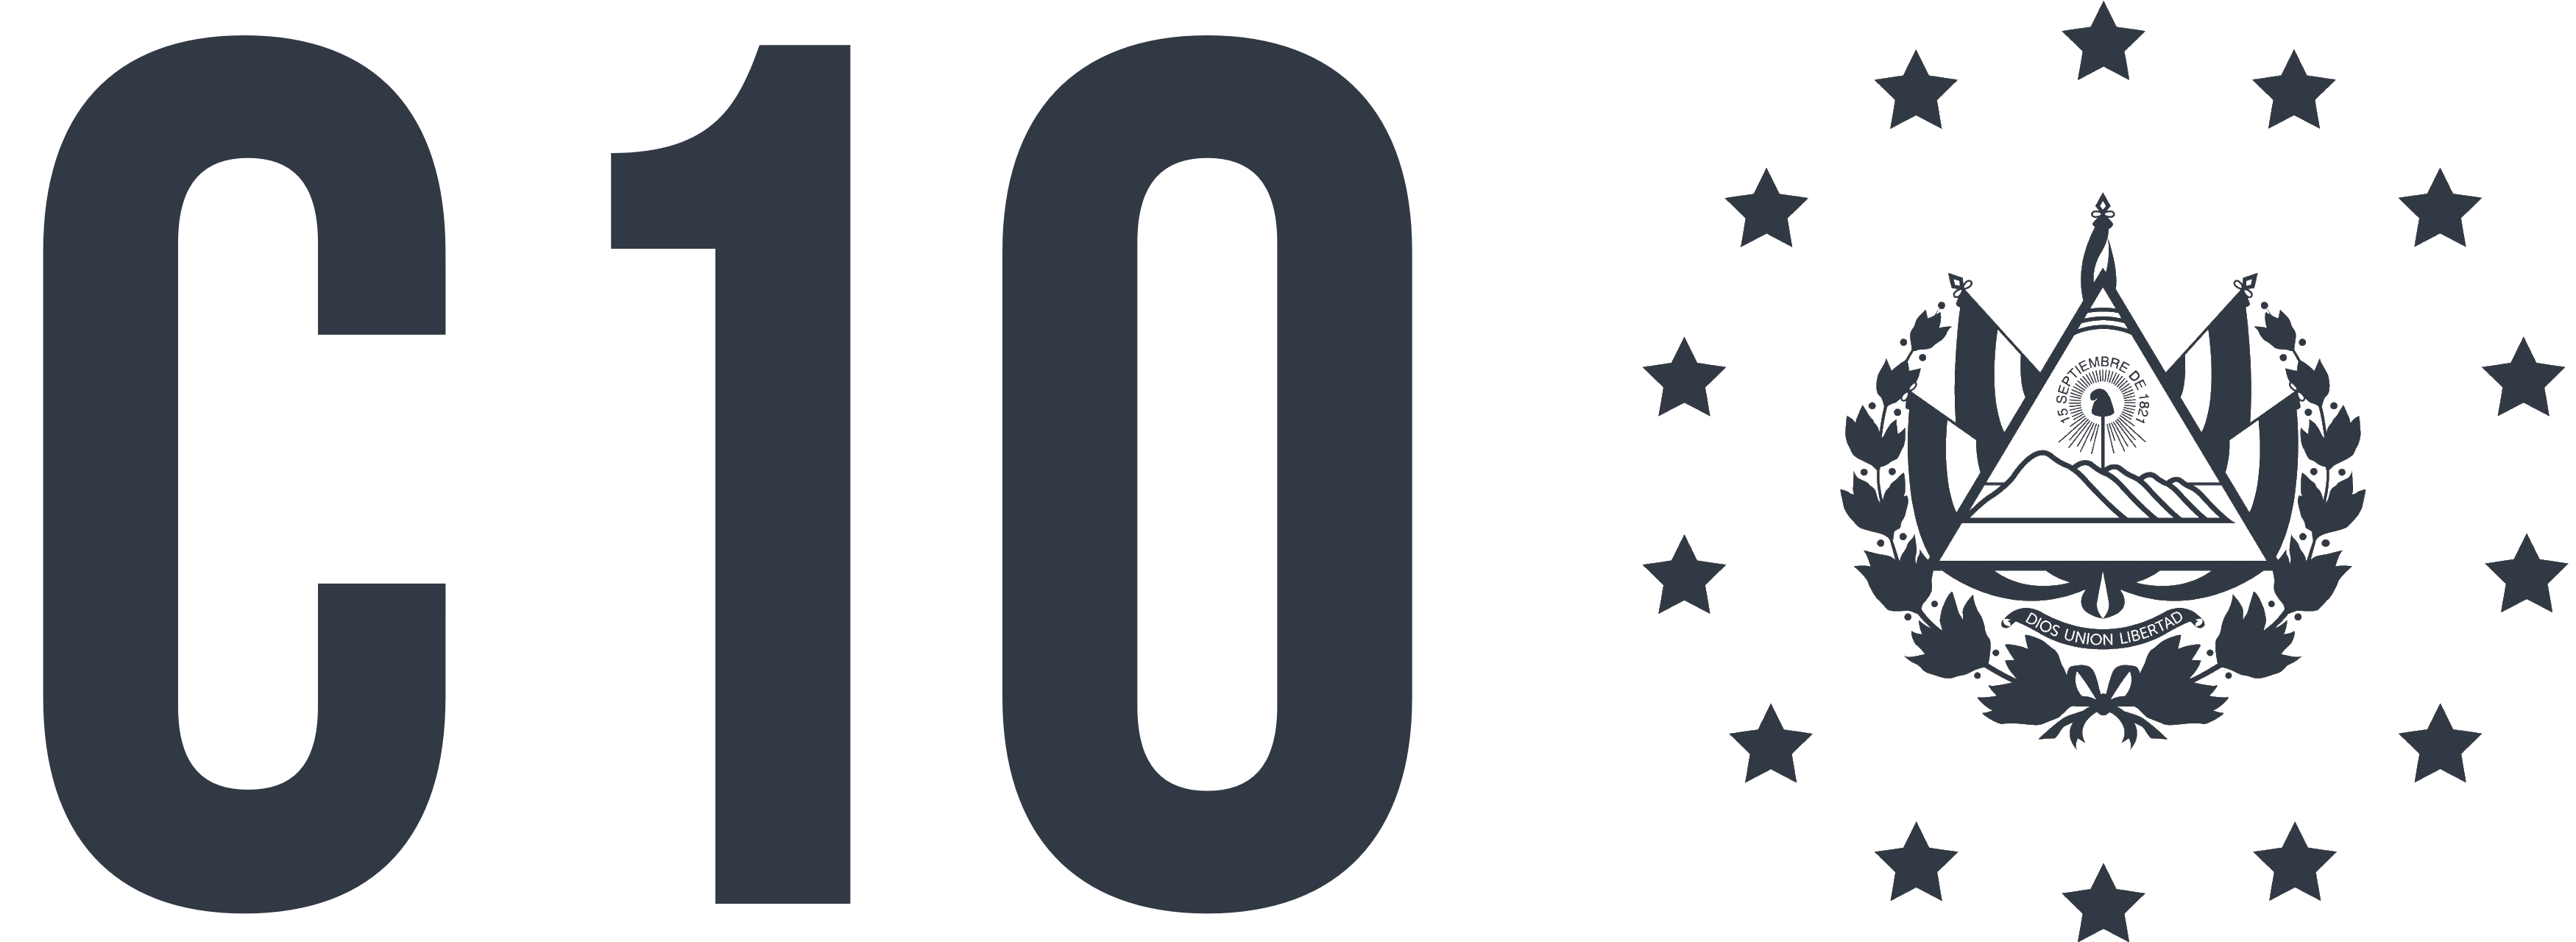 Logo de Canal 10 el salvador en vivo